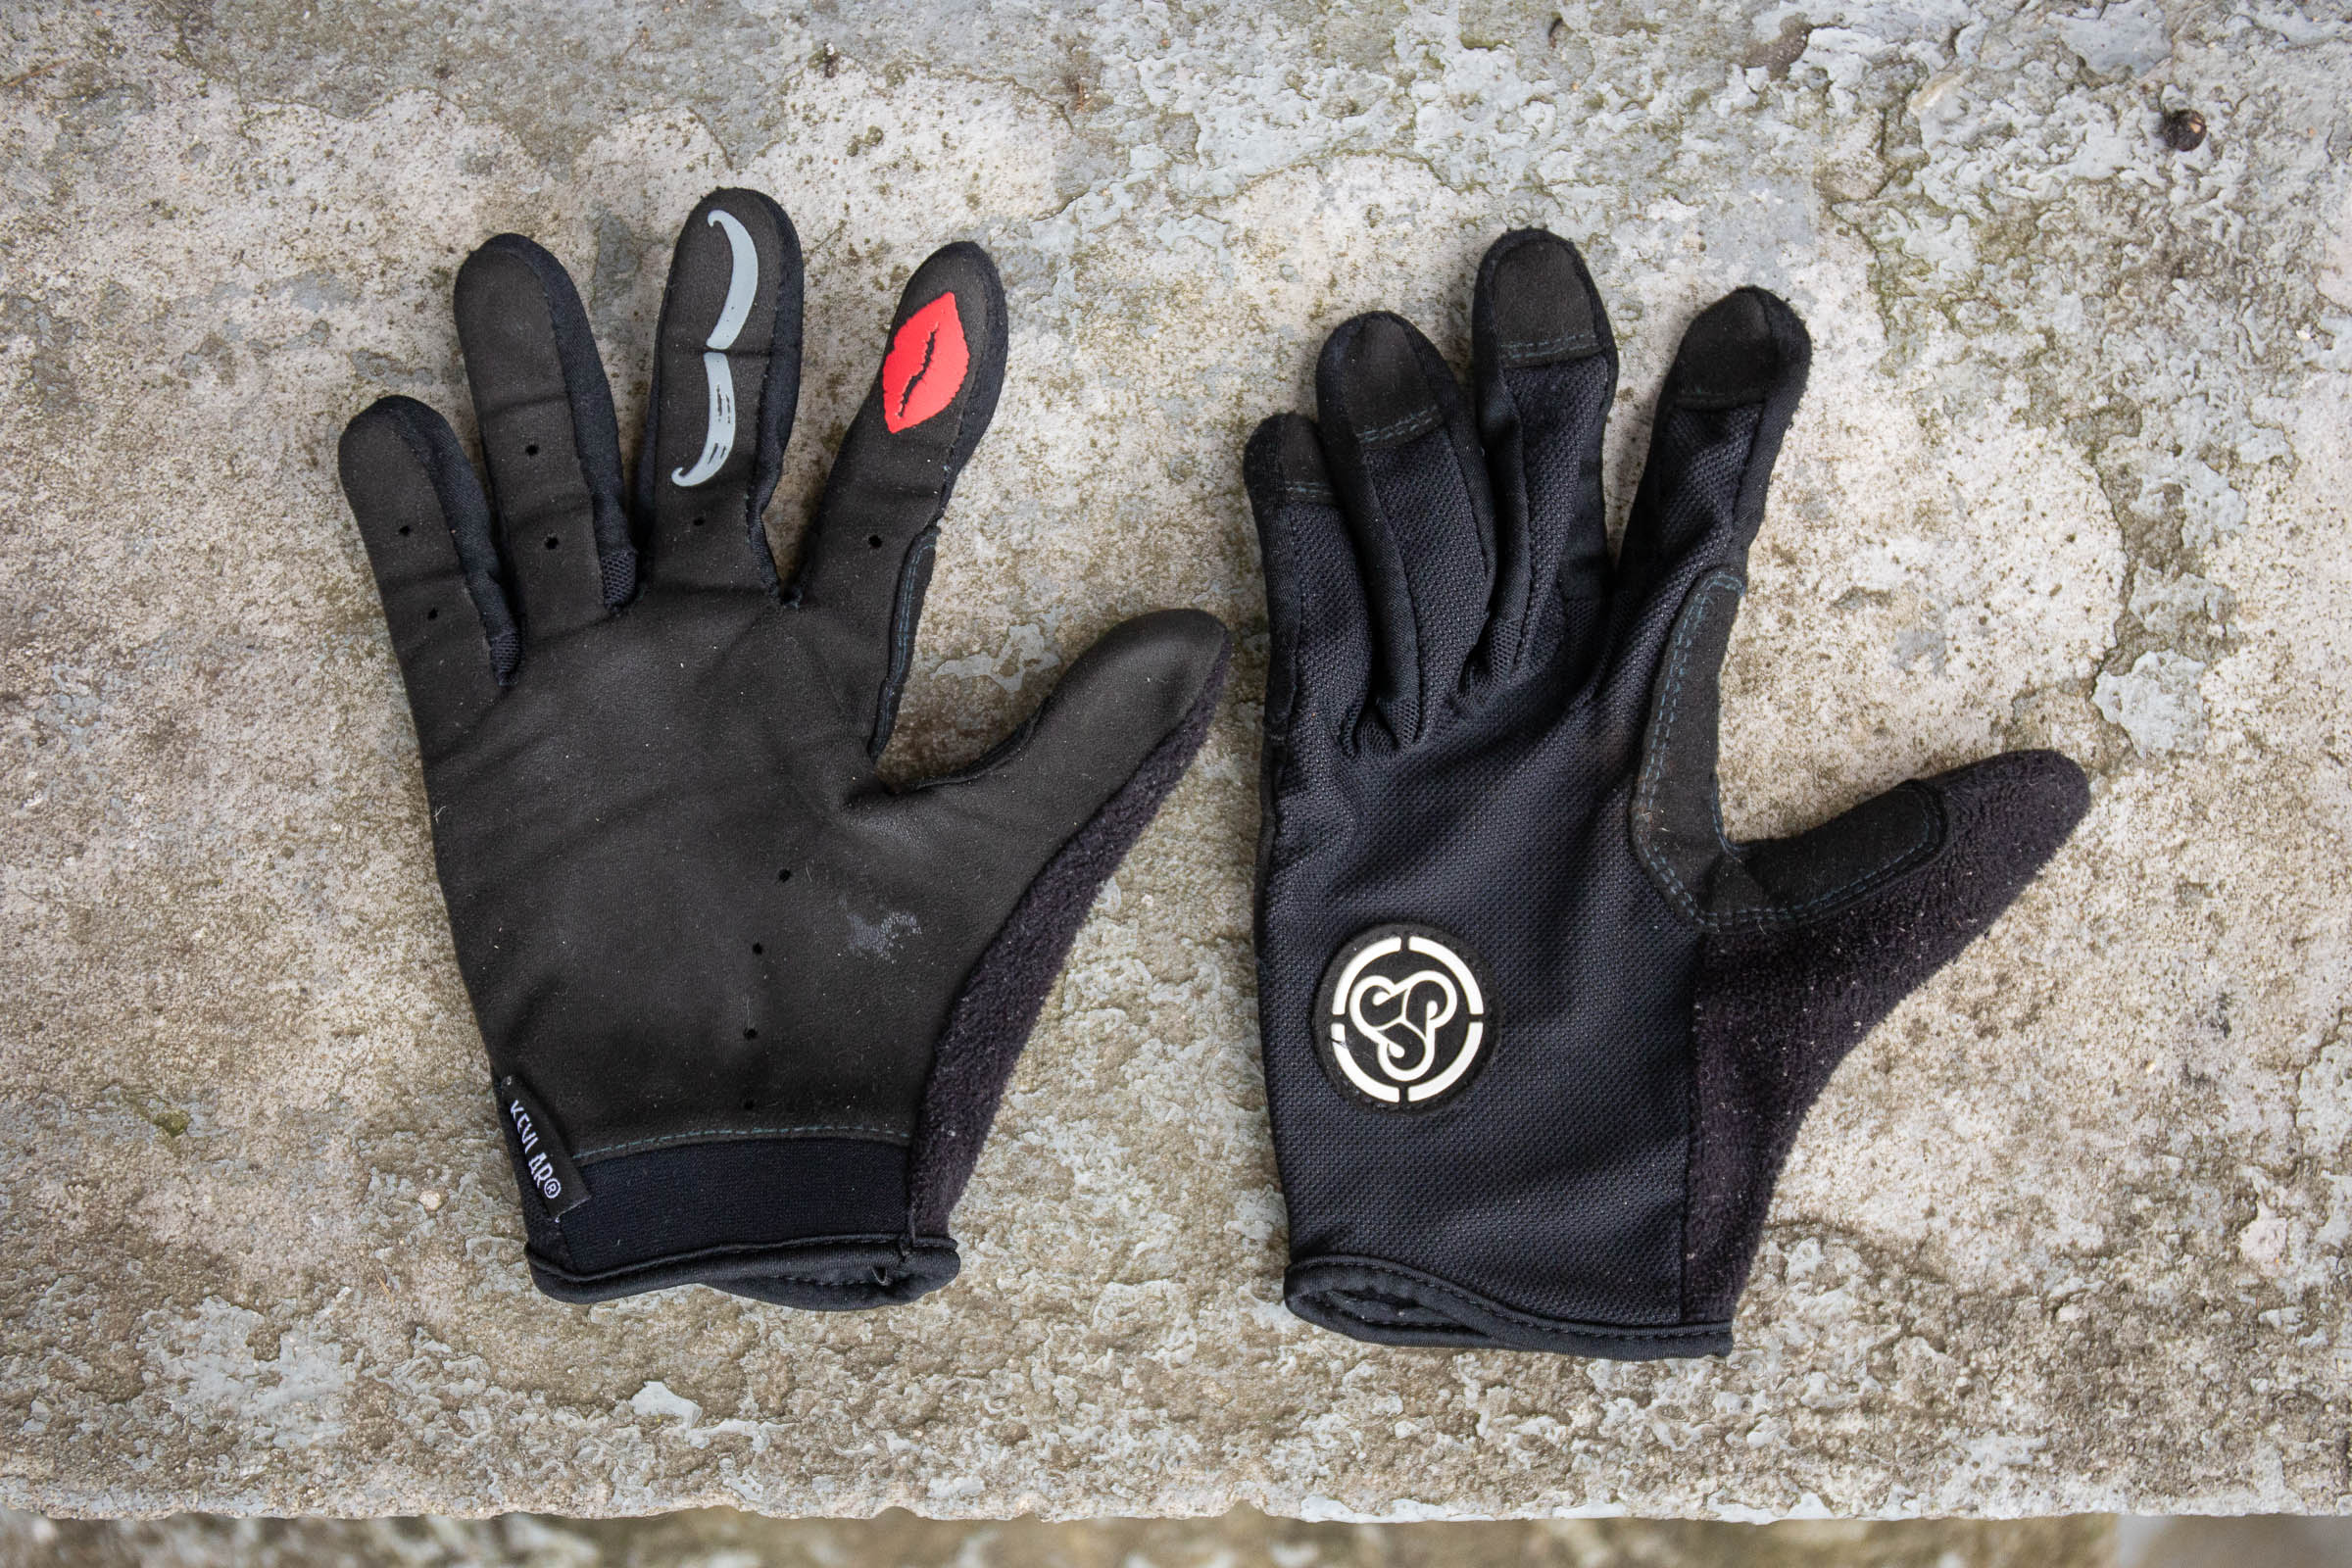 Gearx Cycling Cycle Gloves Waterproof Mountain Bike Sailing Fishing Mittens 